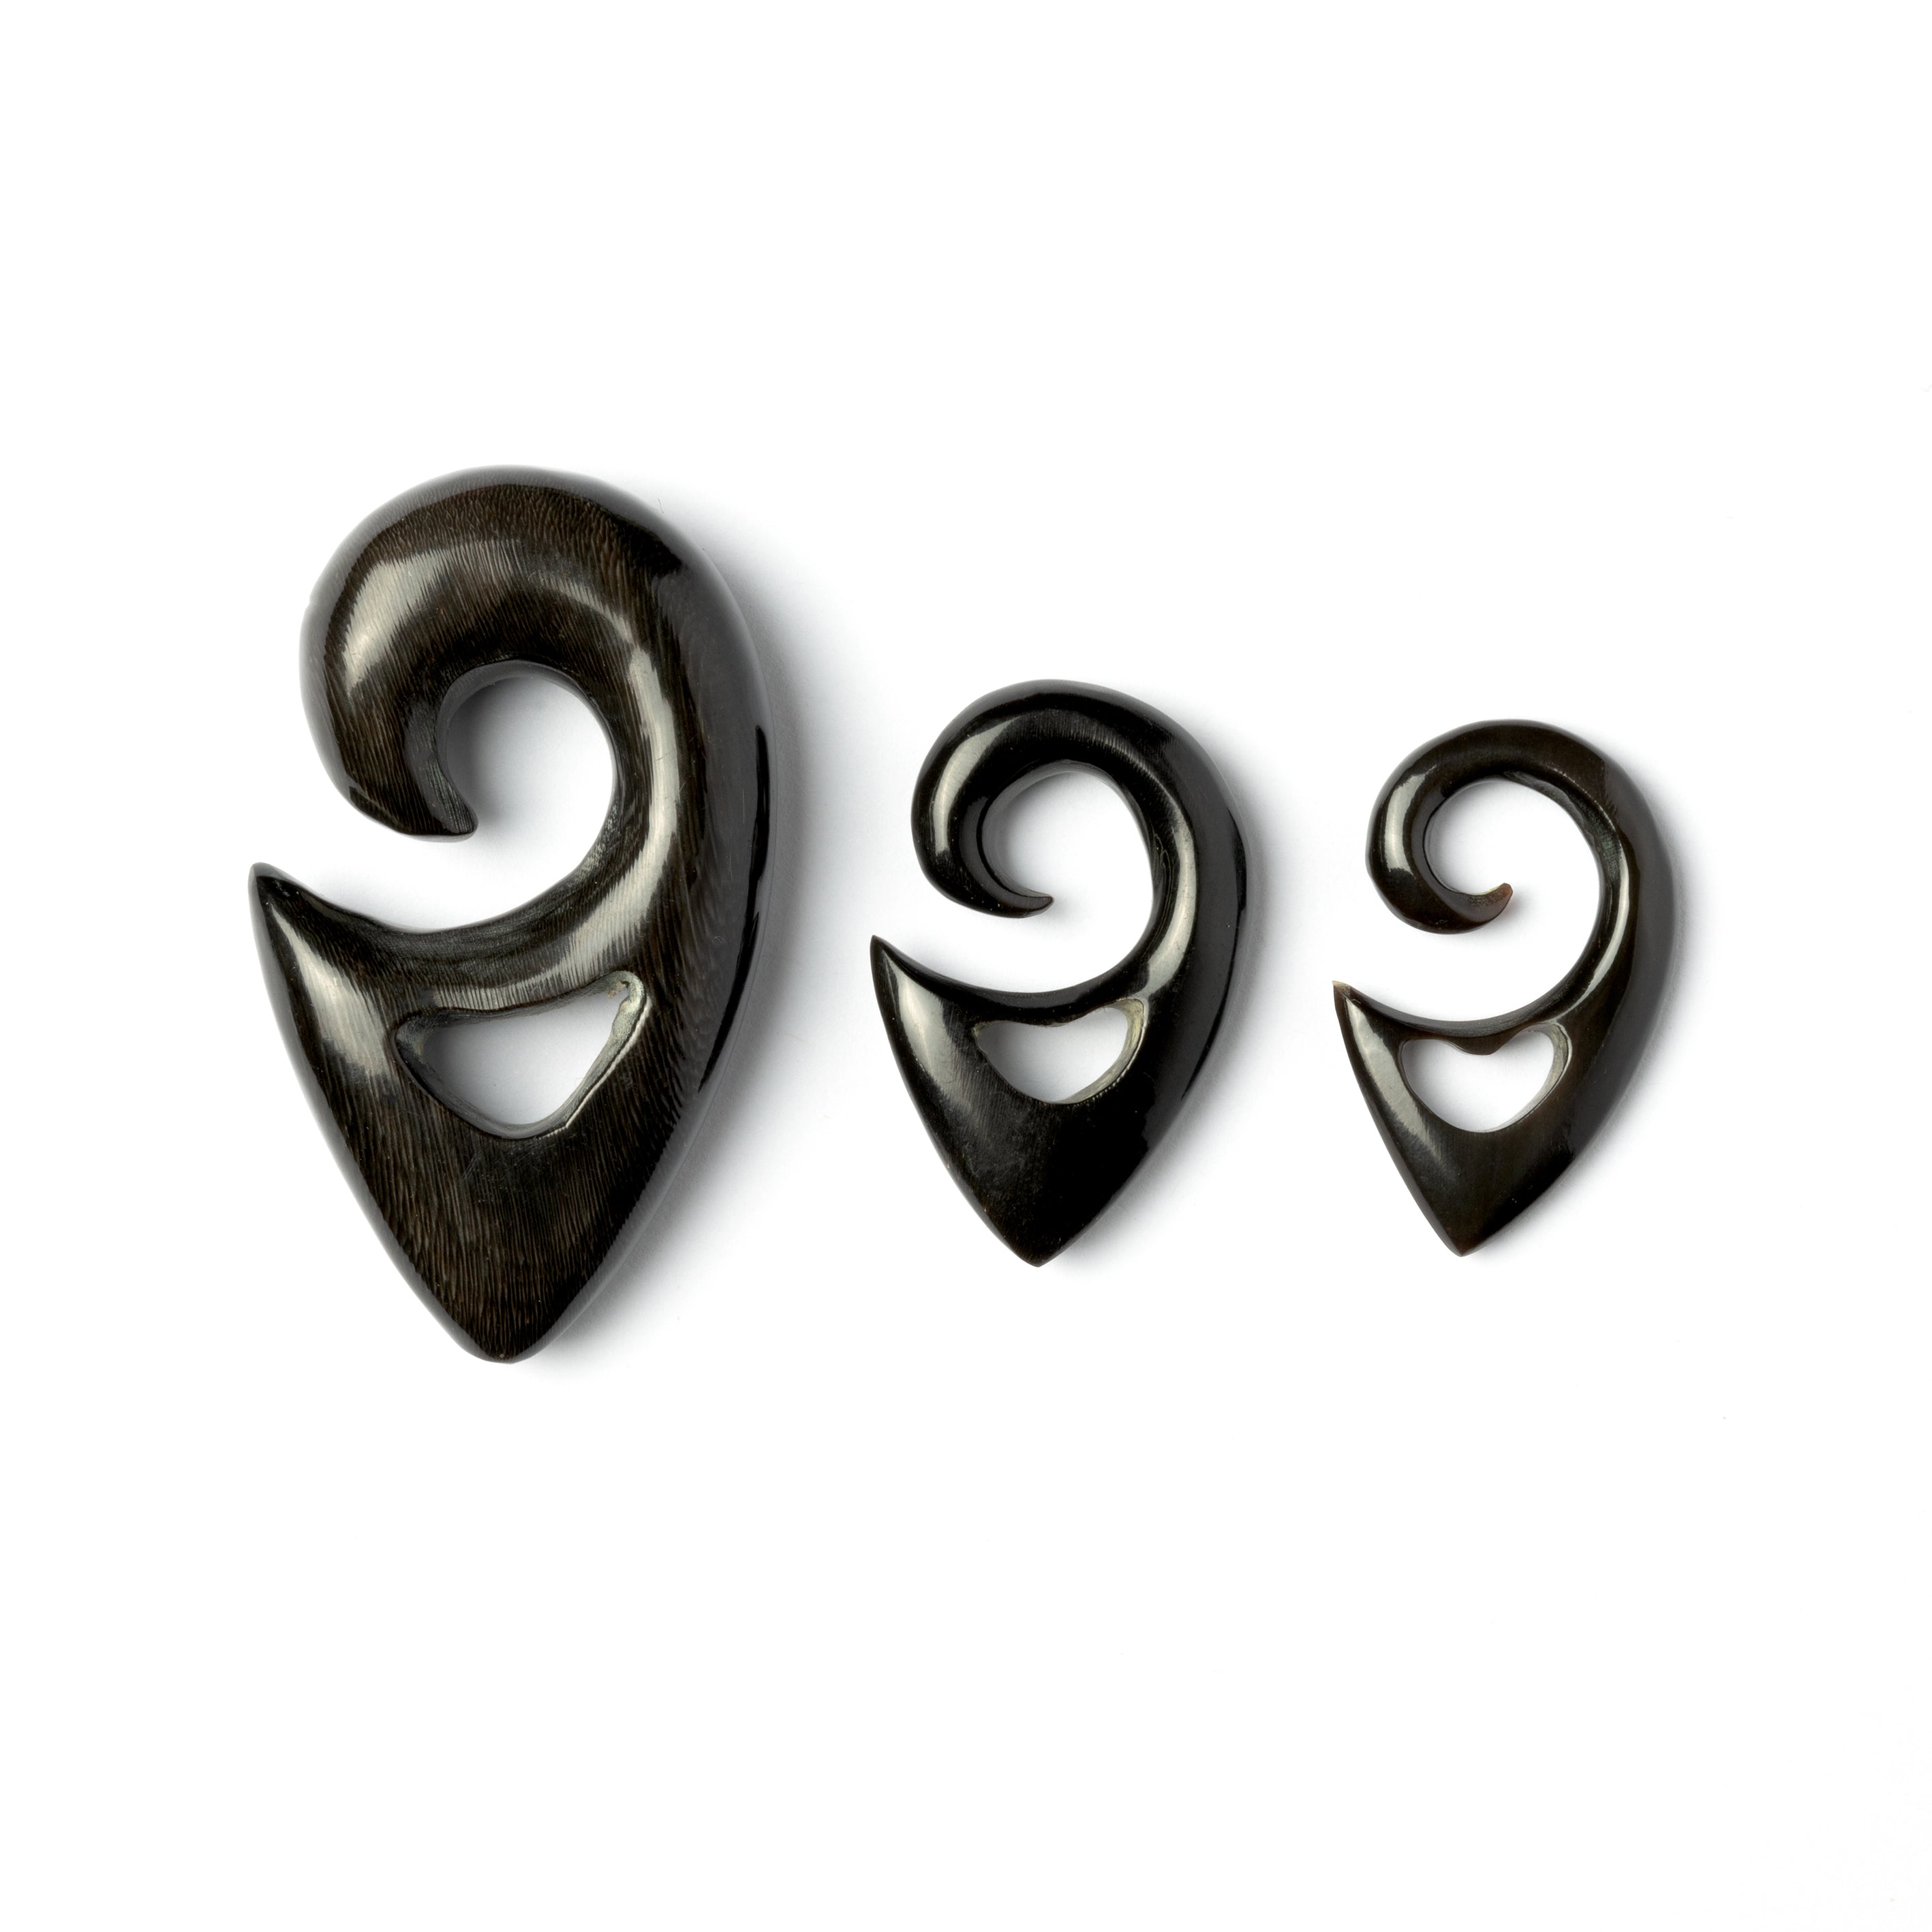 Spiralling Top Triangular Ear Stretchers - Horn 